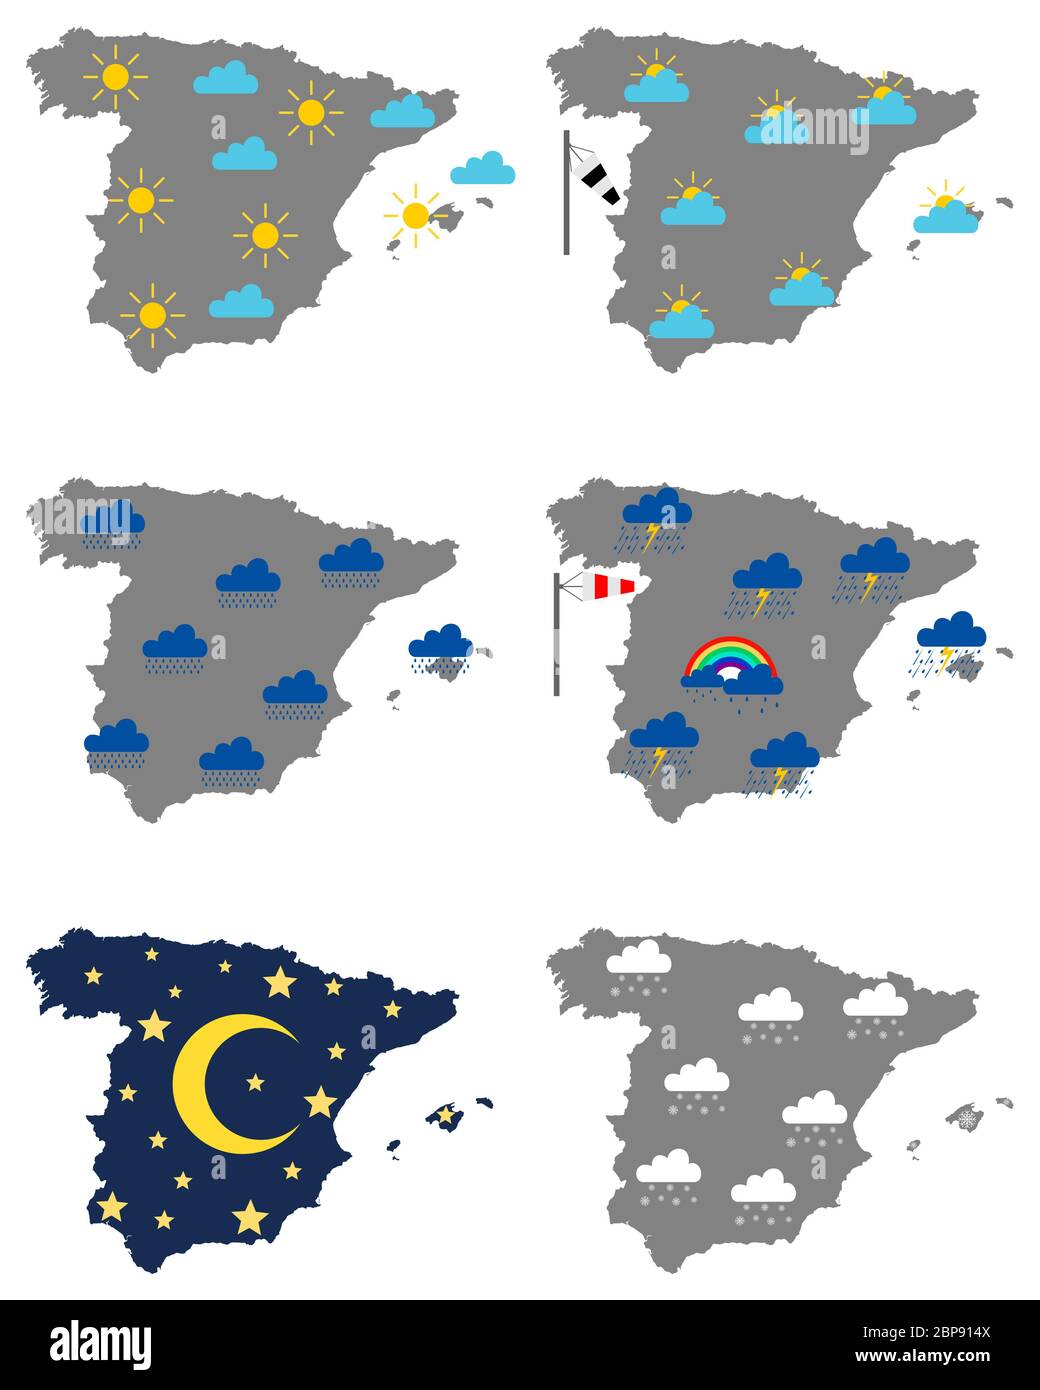 Karten von Spanien mit verschiedenen Wettersymbolen Stock Photo